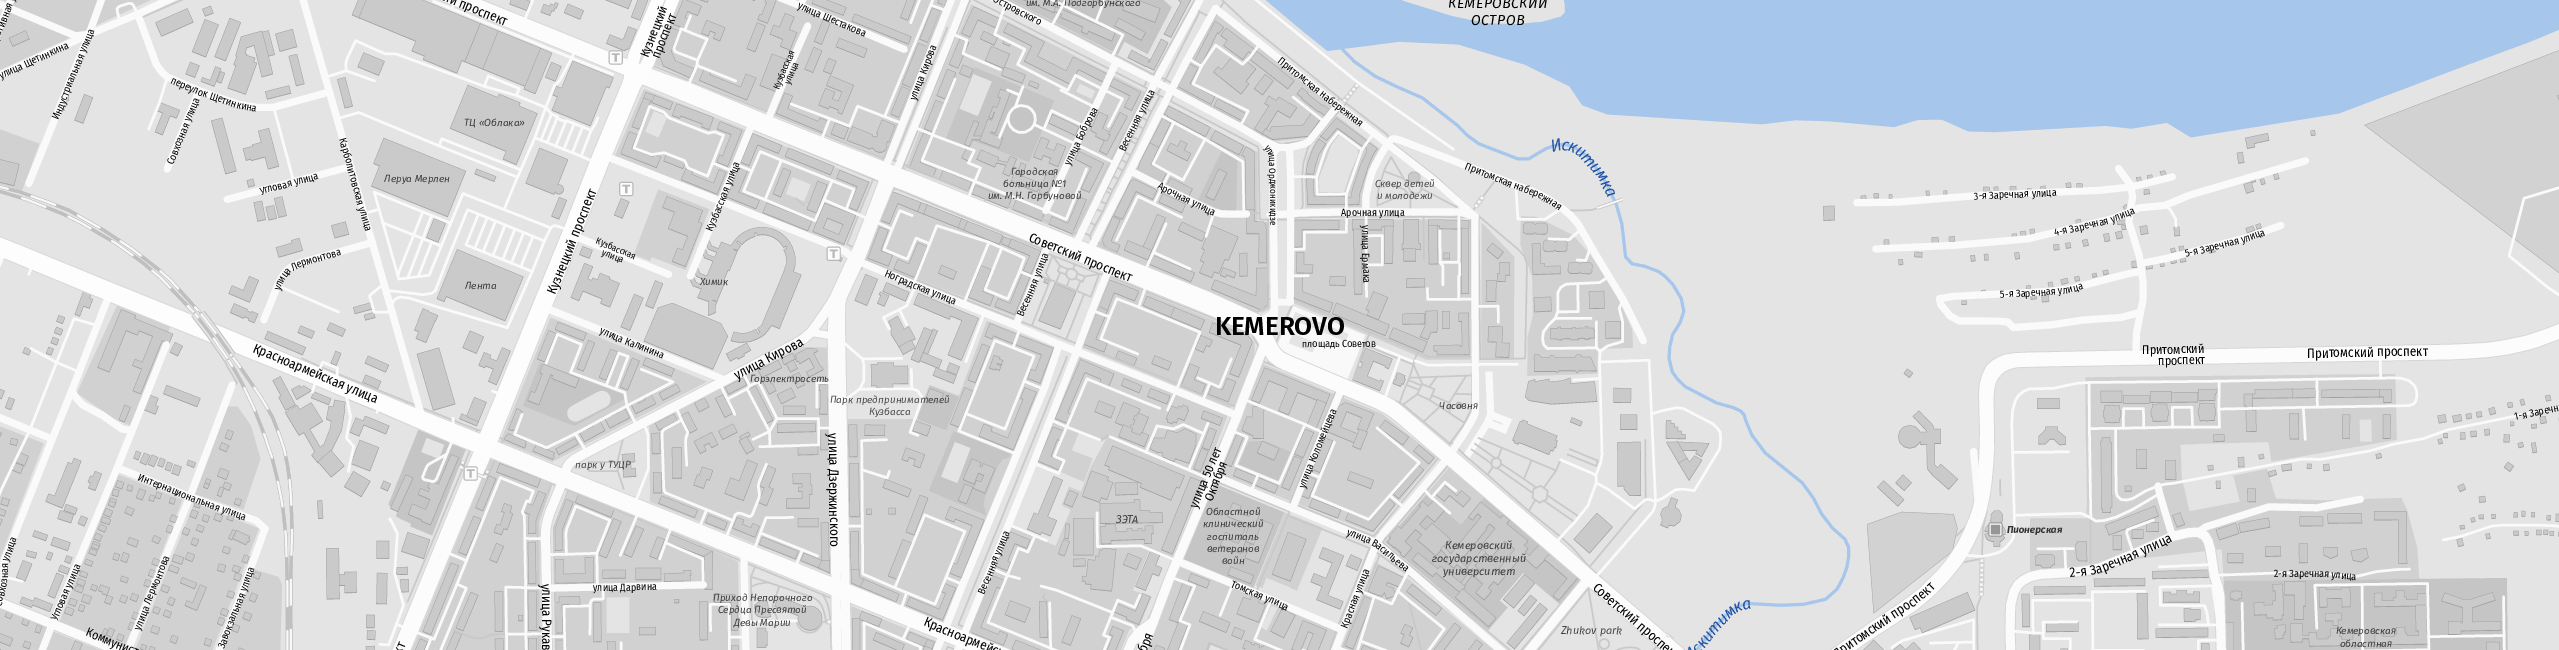 Stadtplan Kemerowo zum Downloaden.